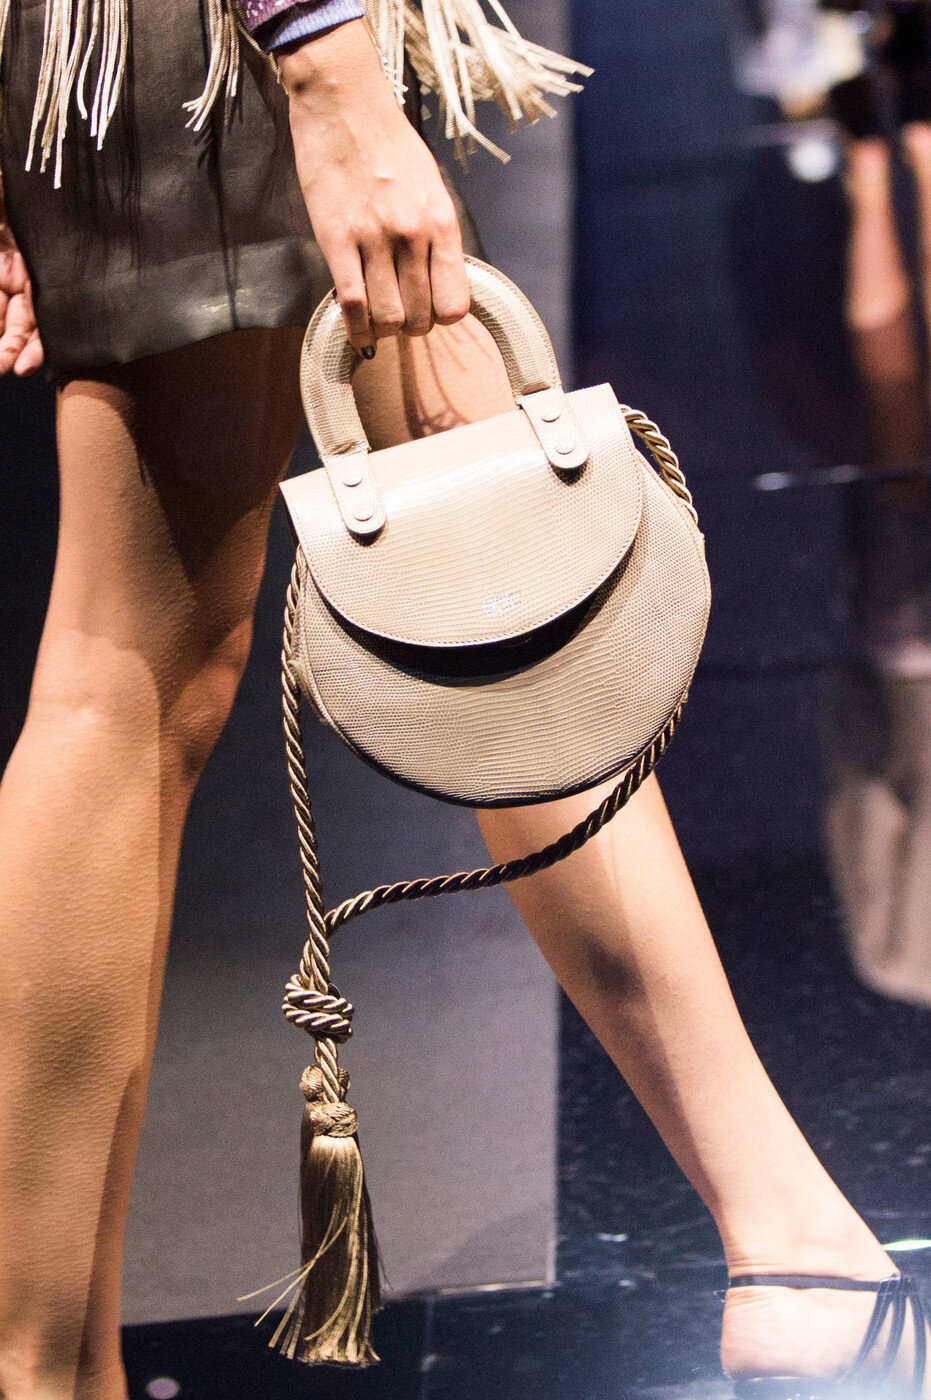 Giorgio Armani Top Handle Flap Bag in Nude Leather.jpg